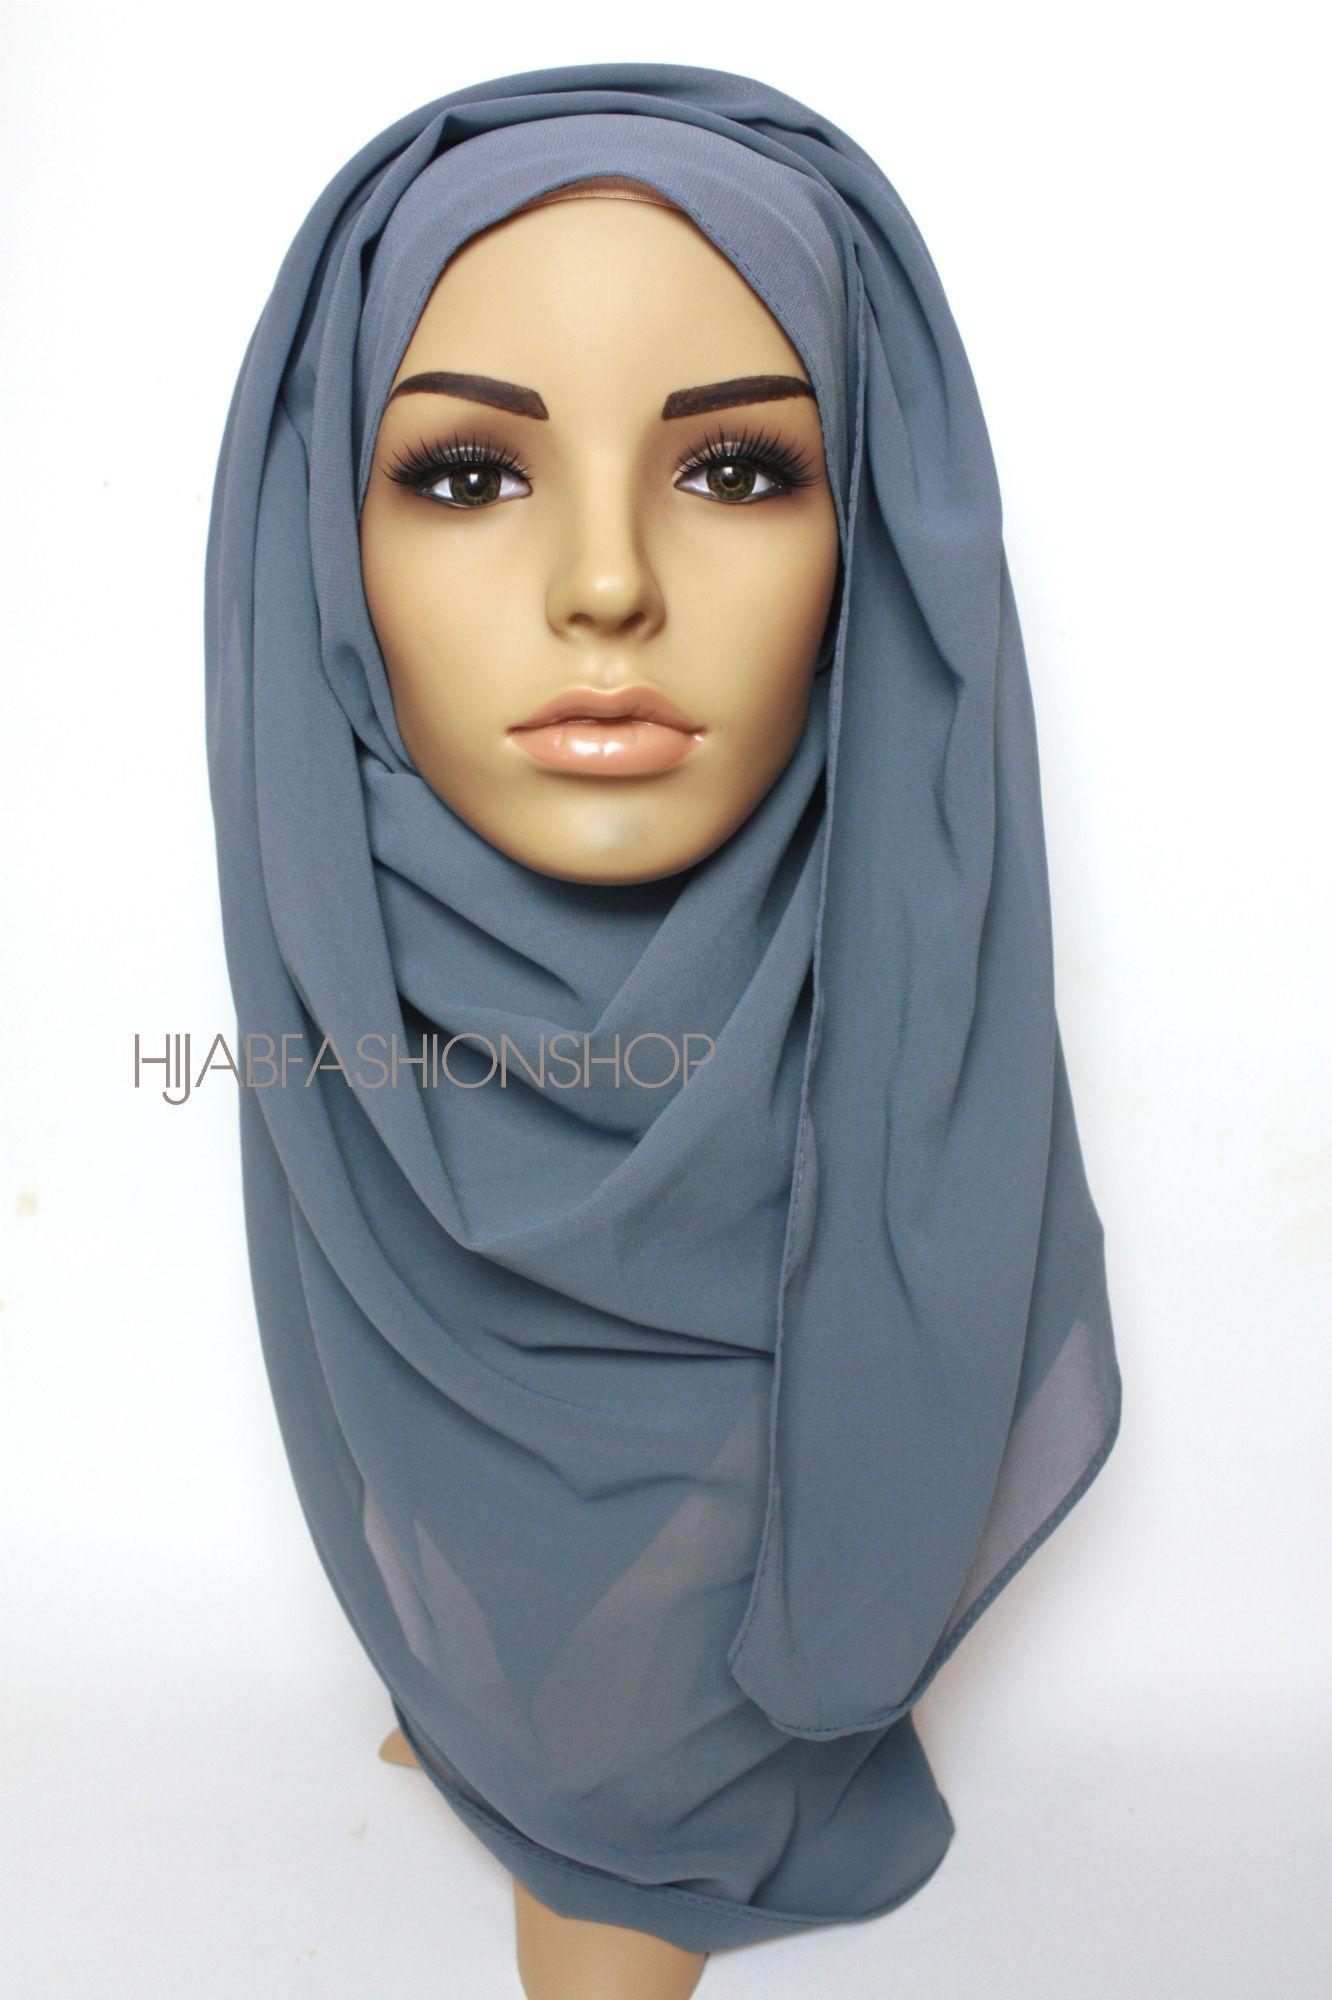 greyish blue crepe chiffon hijab